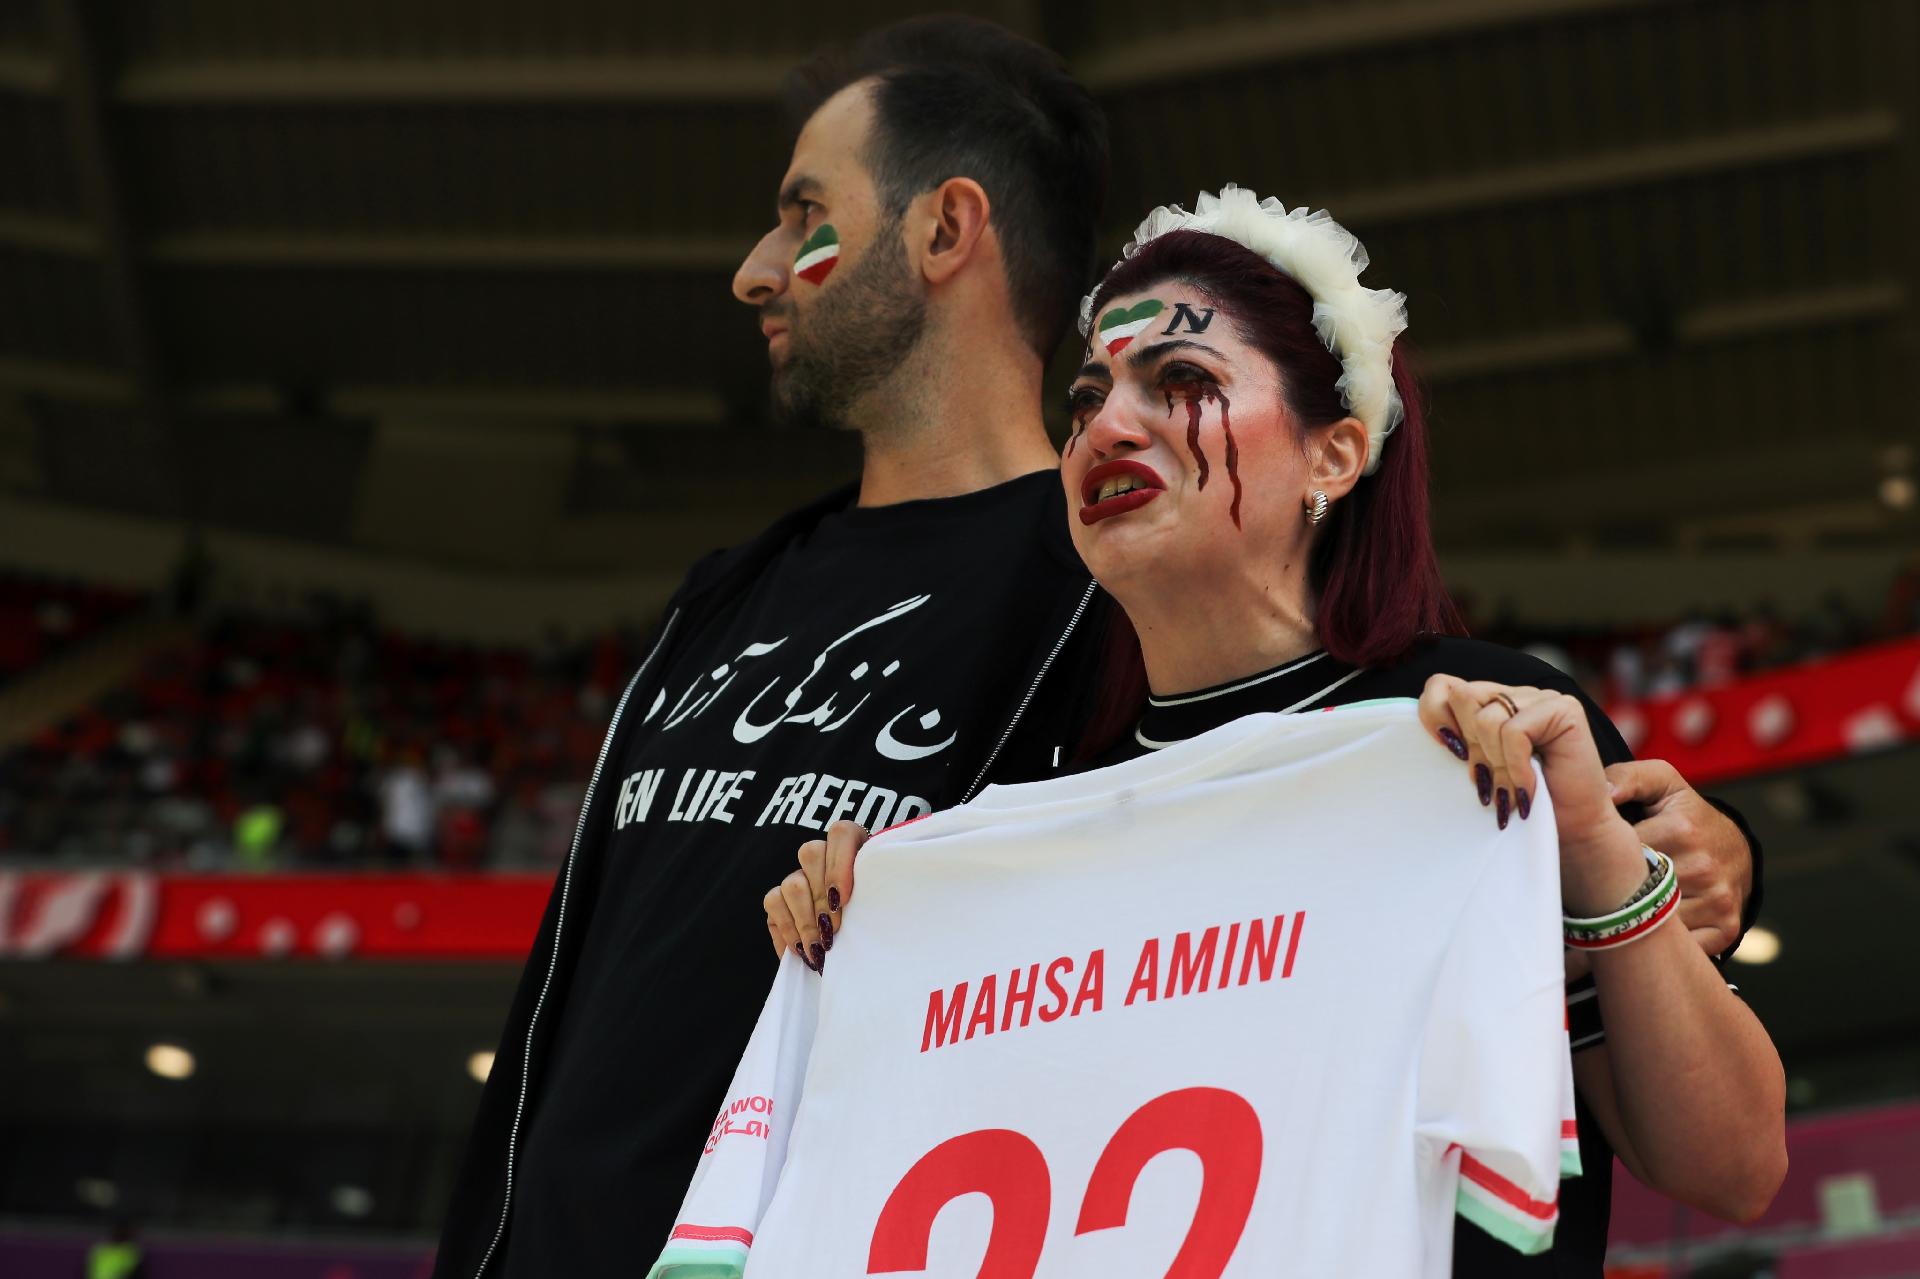 Copa 2022: Por que muitos iranianos estão torcendo contra a seleção do Irã?  - Mídia NINJA